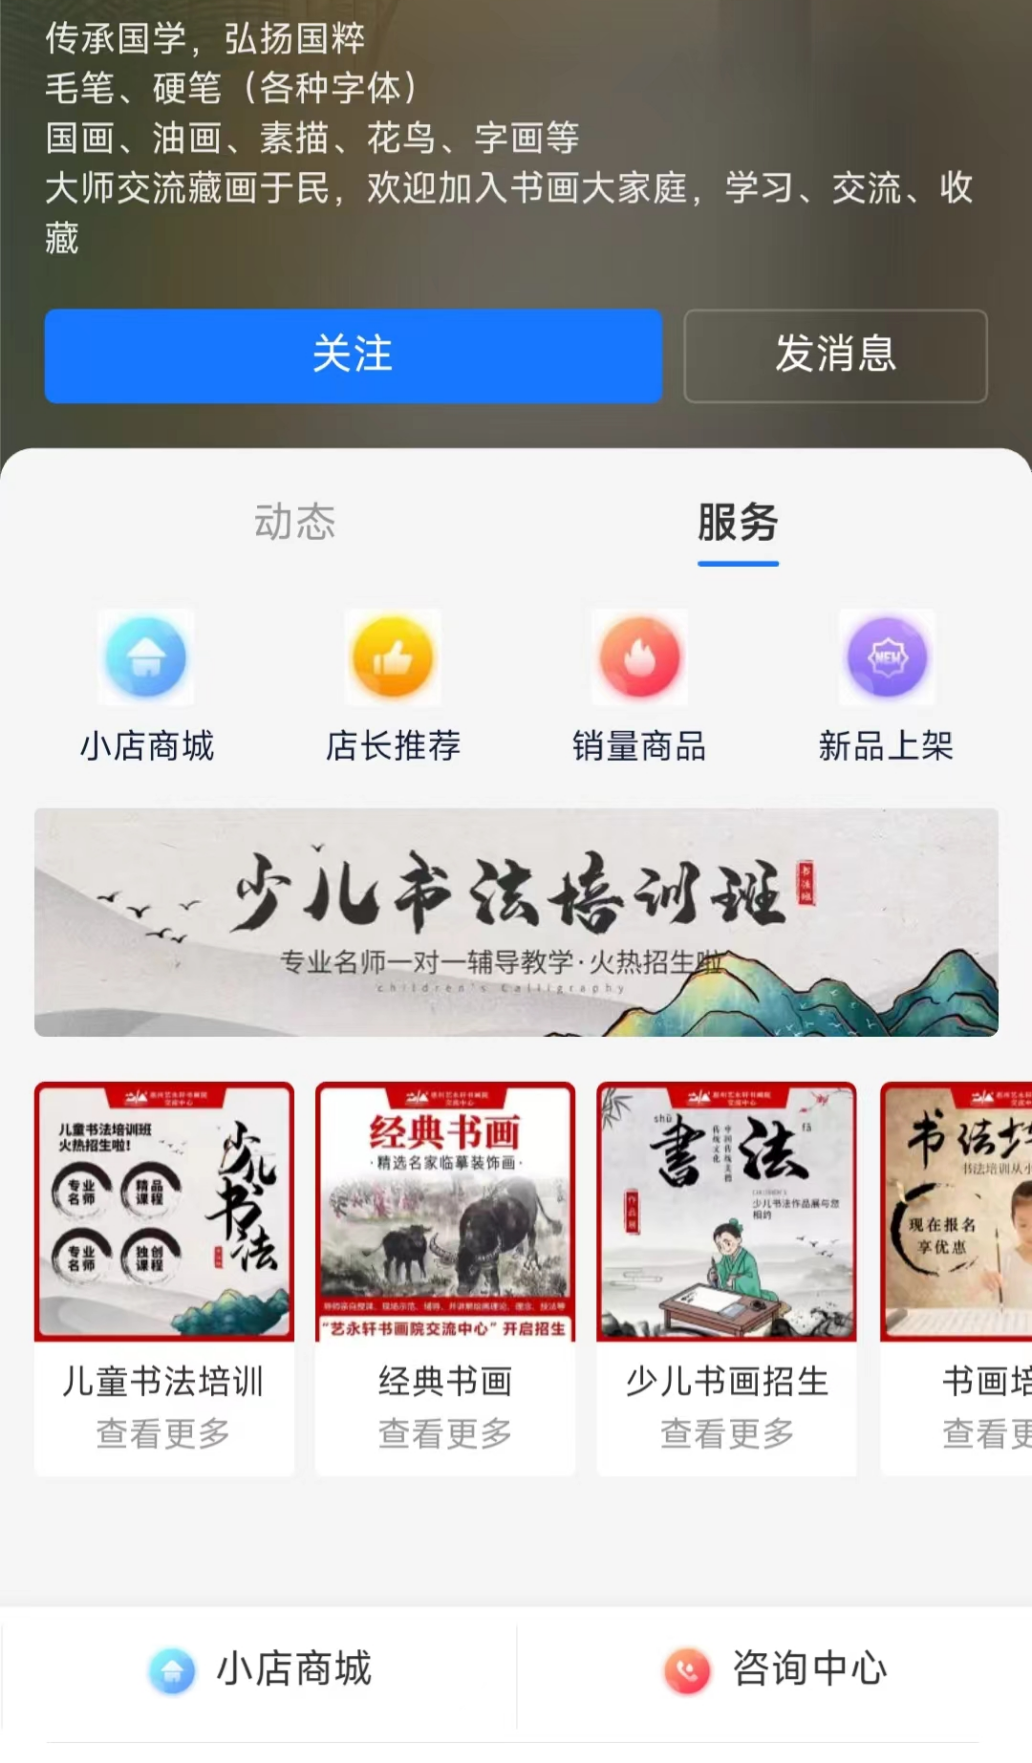 惠州市鑫福淼艺术交流中心专业平台